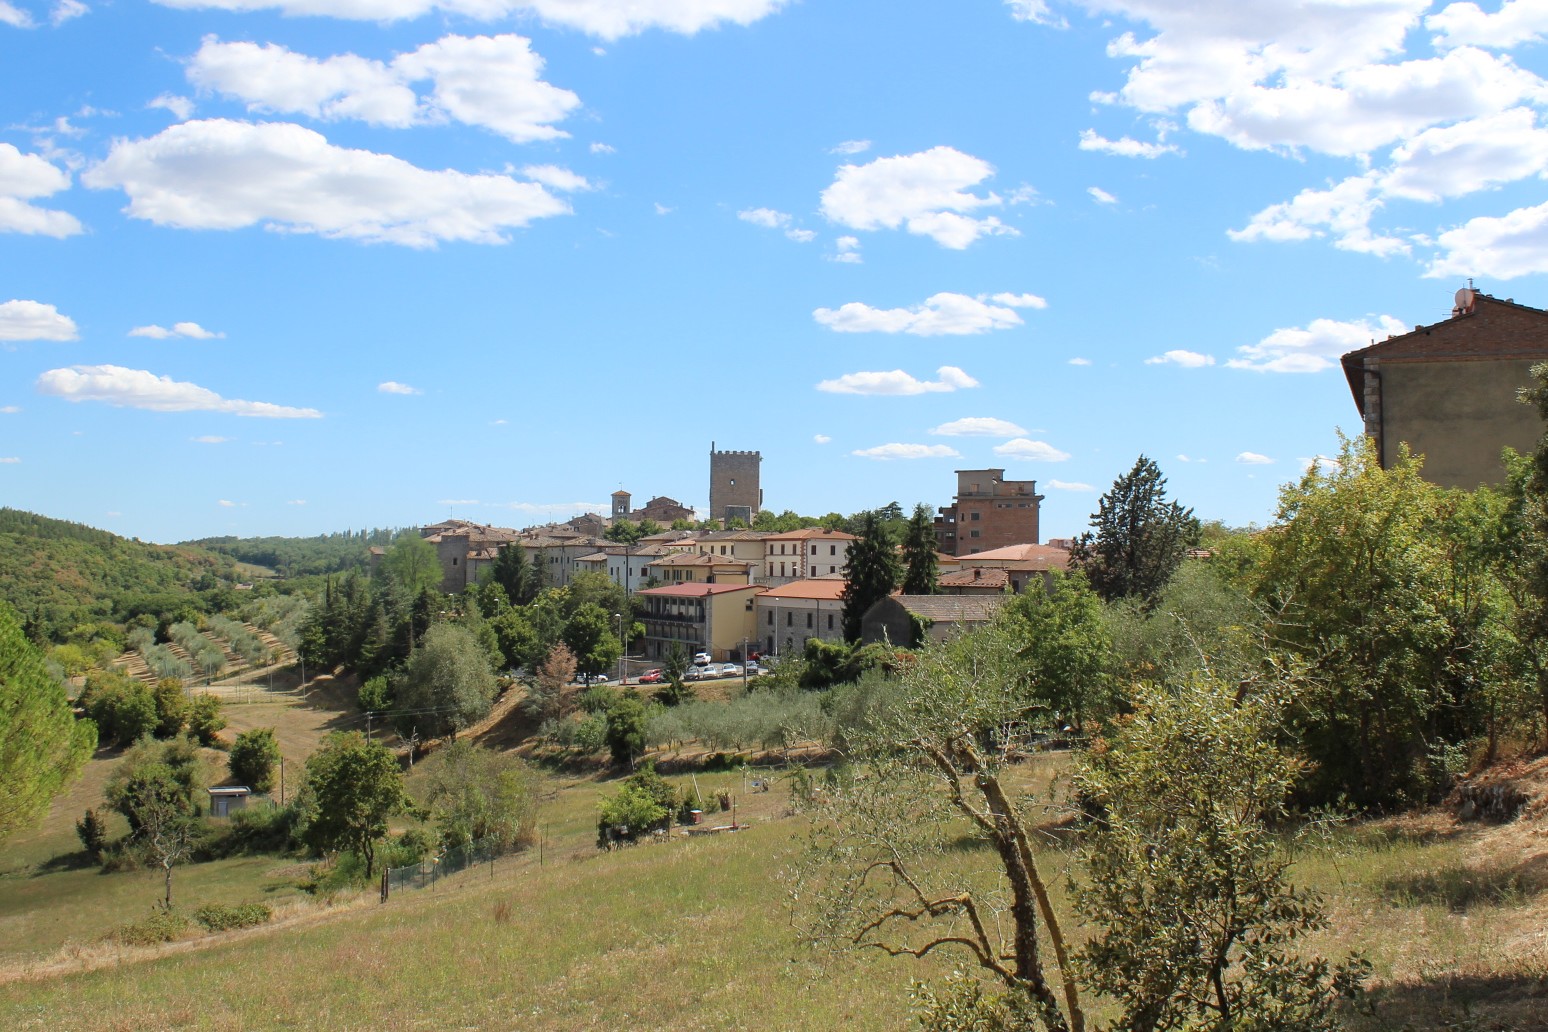 Top 5 idyllische dorpjes in Italië